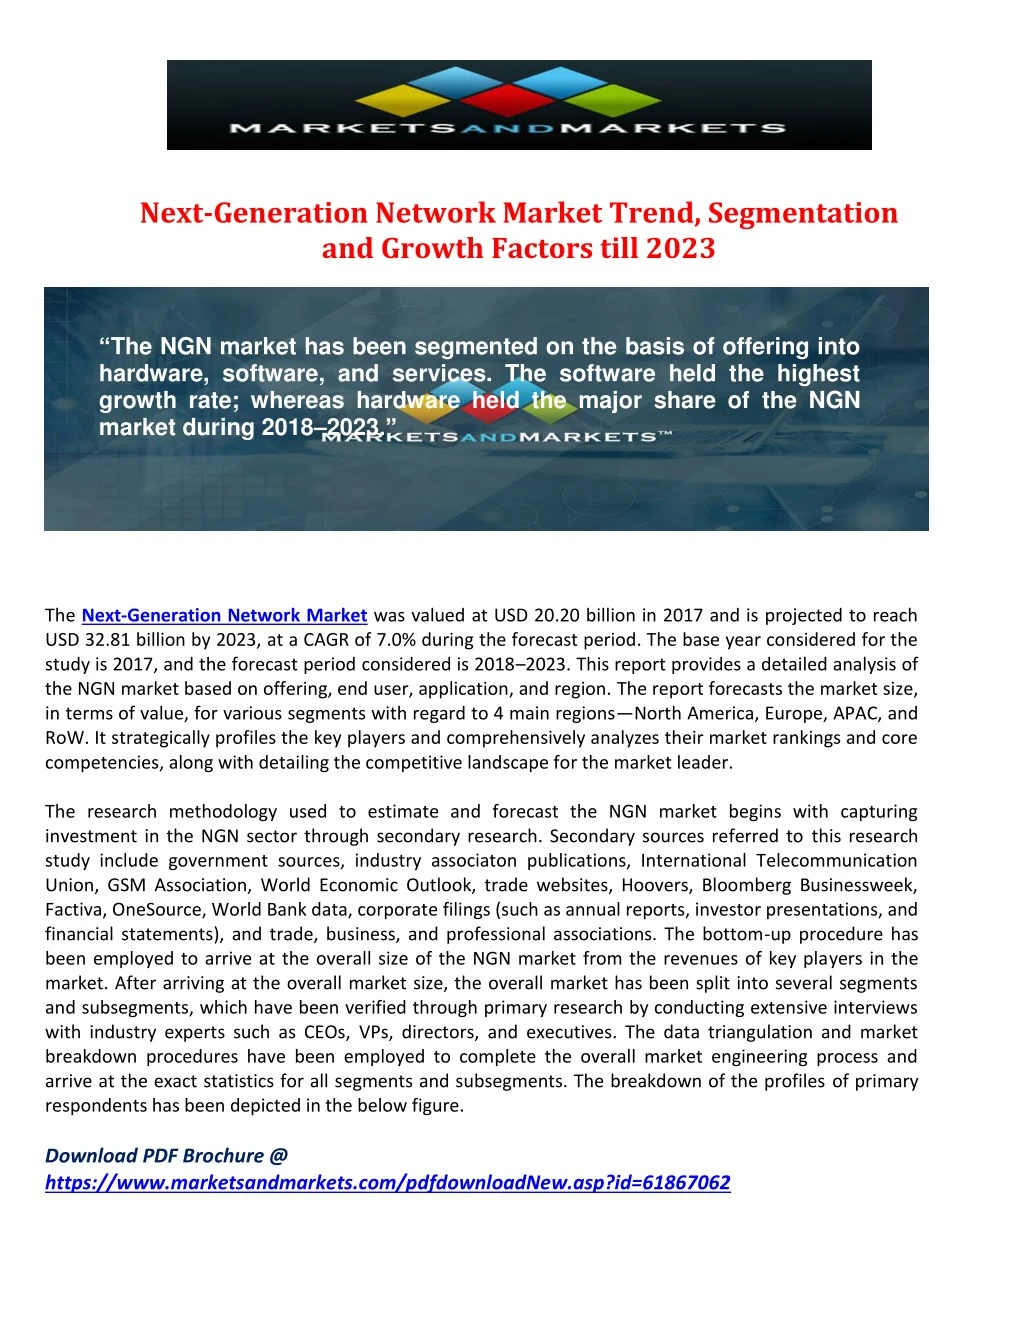 next generation network market trend segmentation